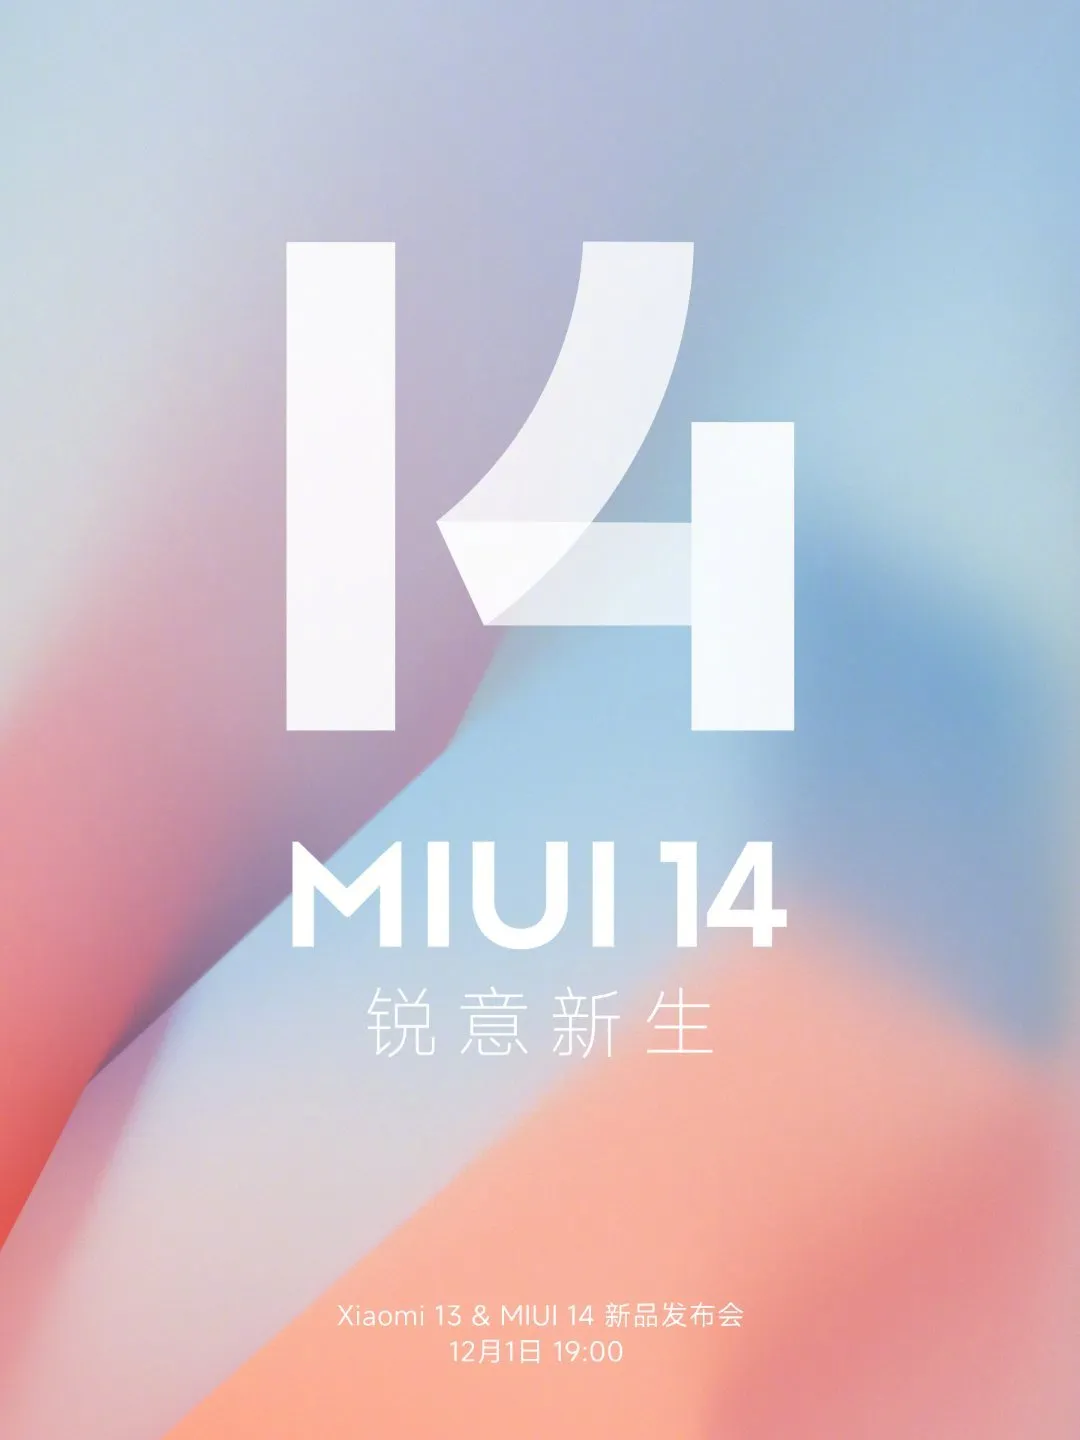 Офіційний постер оболонки MIUI 14